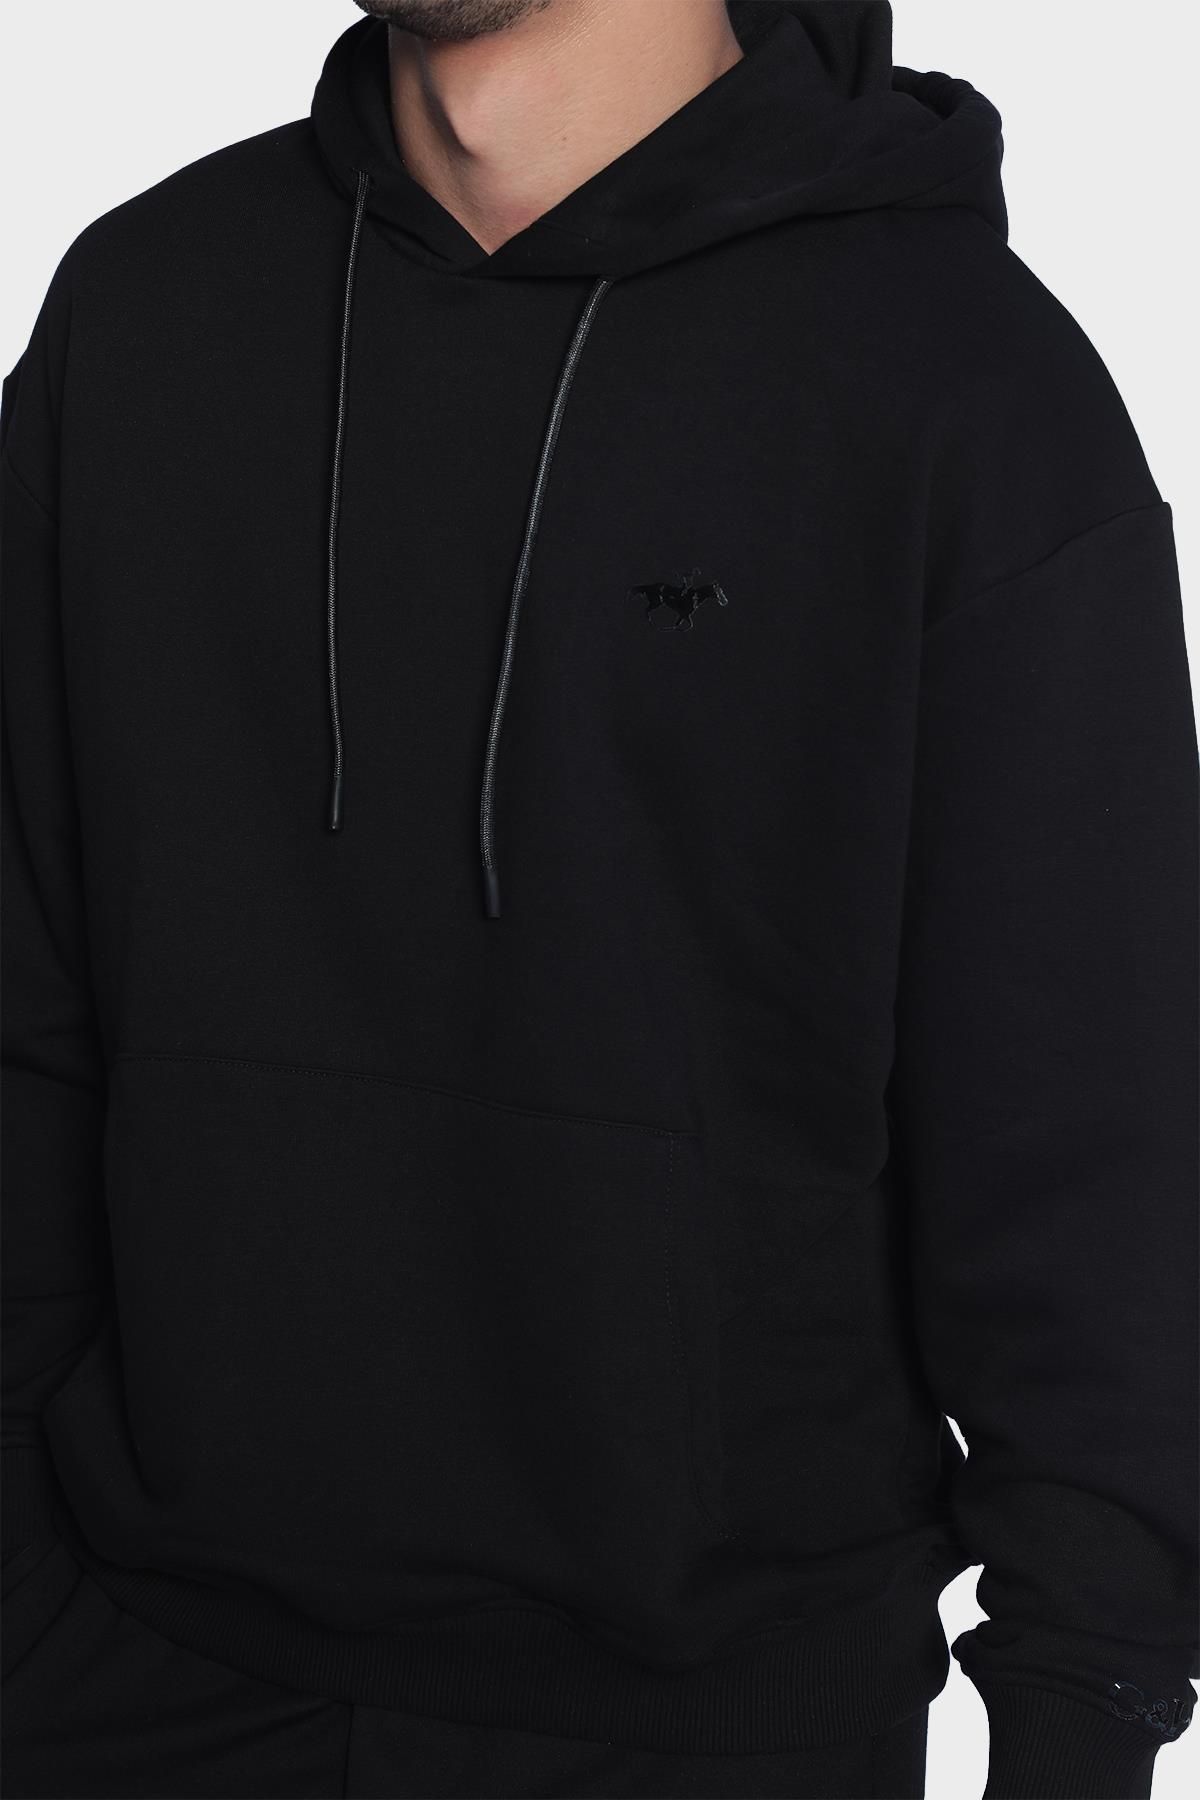 Erkek kapüşonlu ve uzun kollu sweatshirt - Siyah